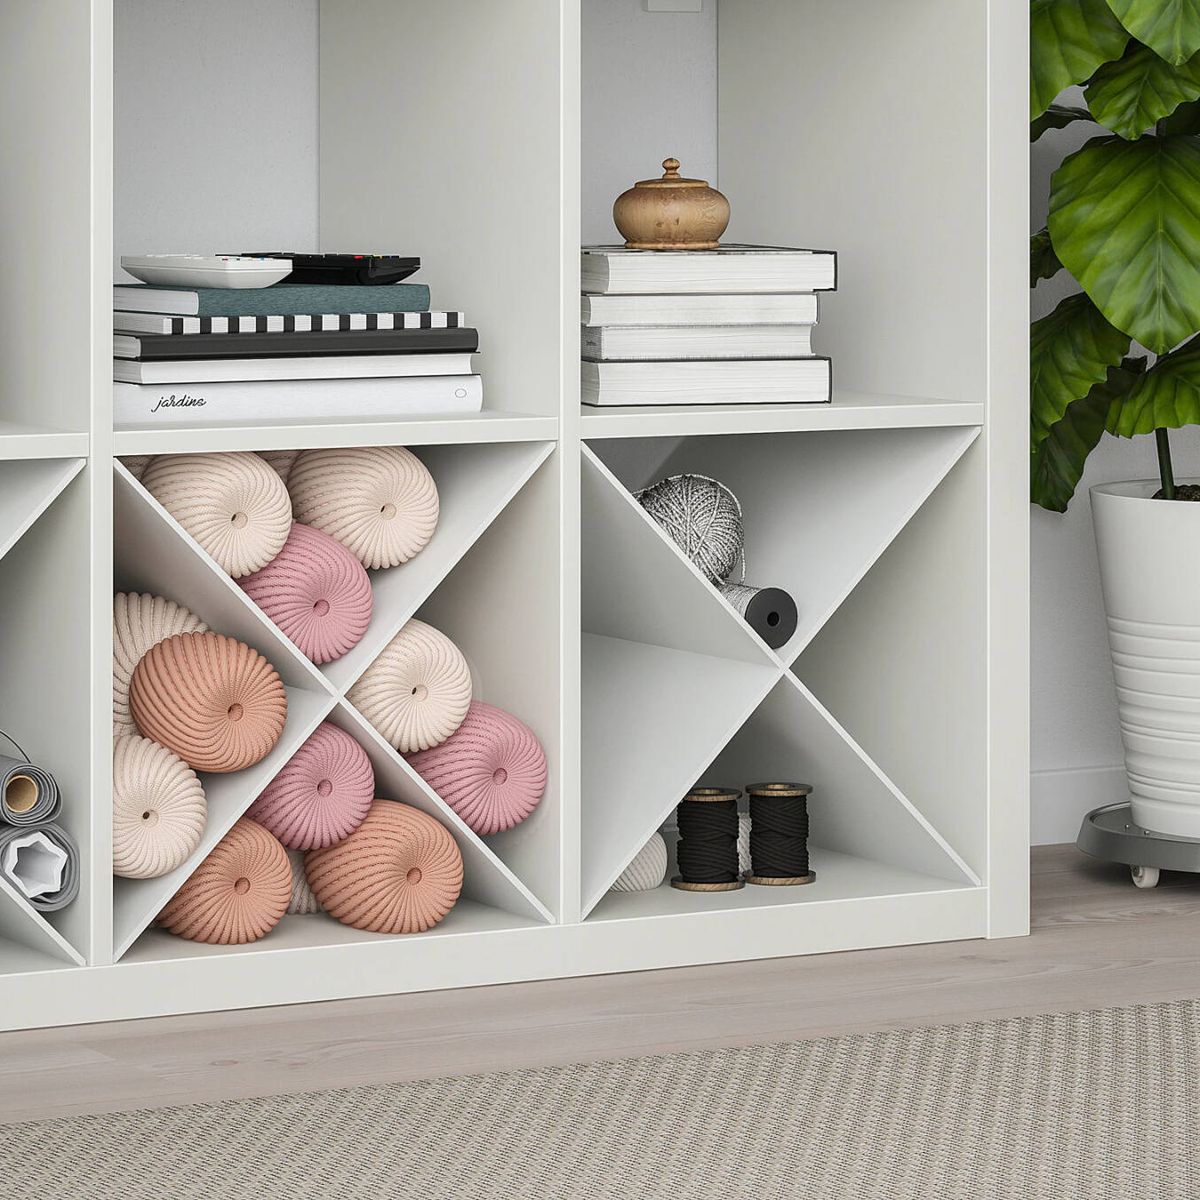 Estas estanterías de IKEA son geniales para separar ambientes y ganar estilo